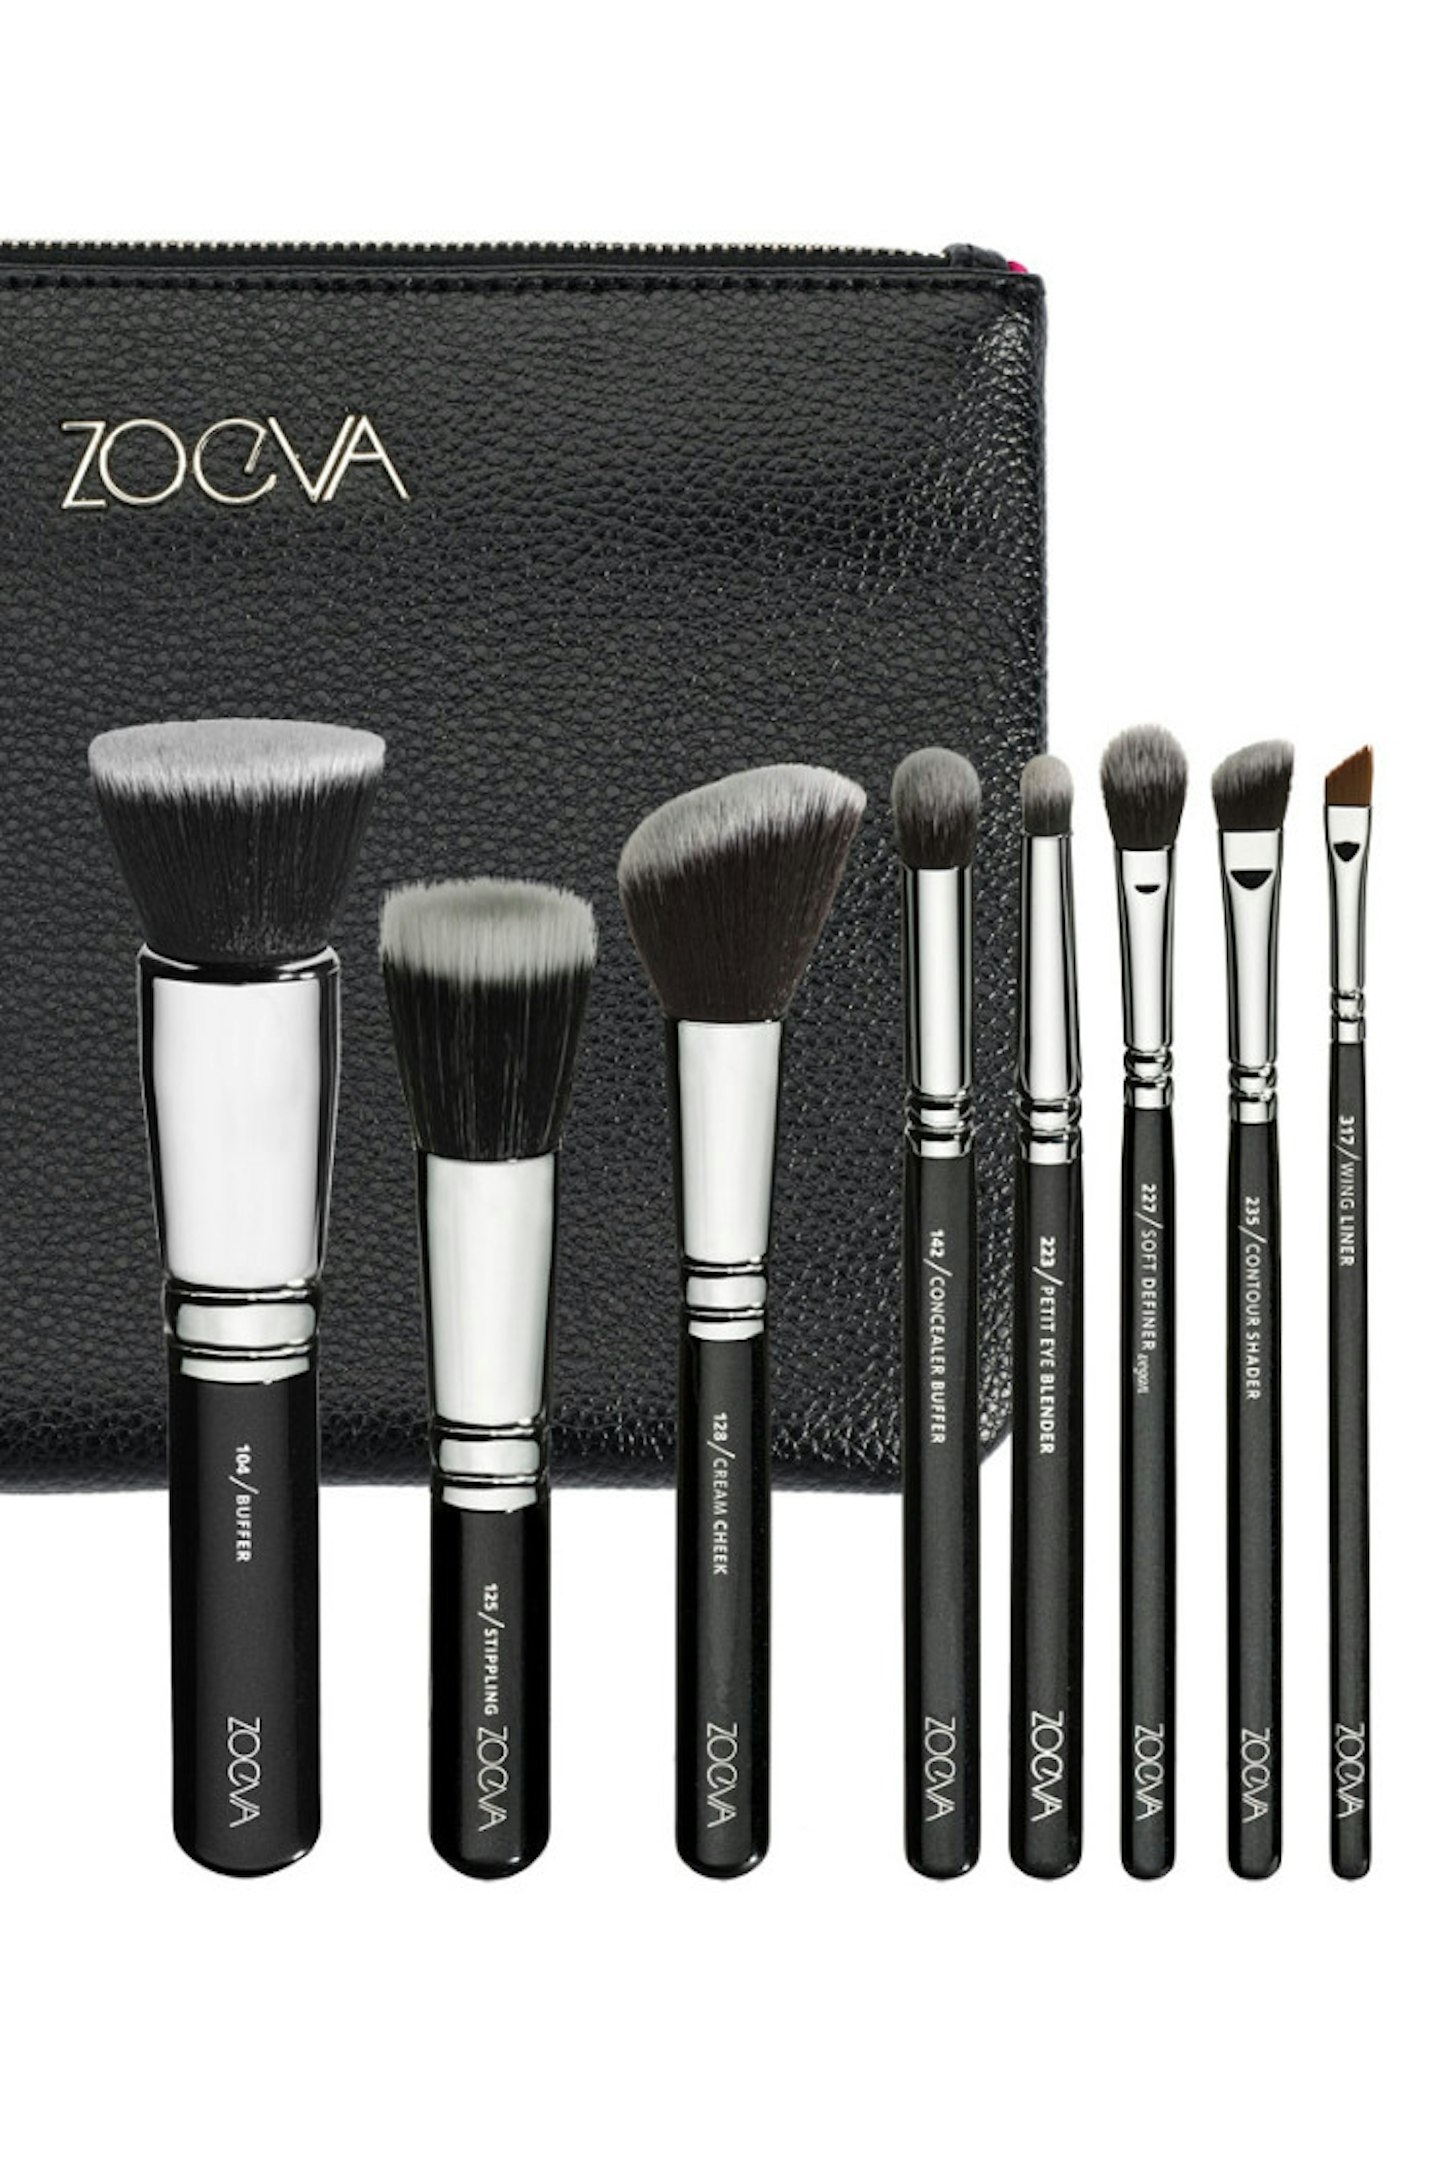 Zoeva Vegan Brush Set, £52, Zoeva